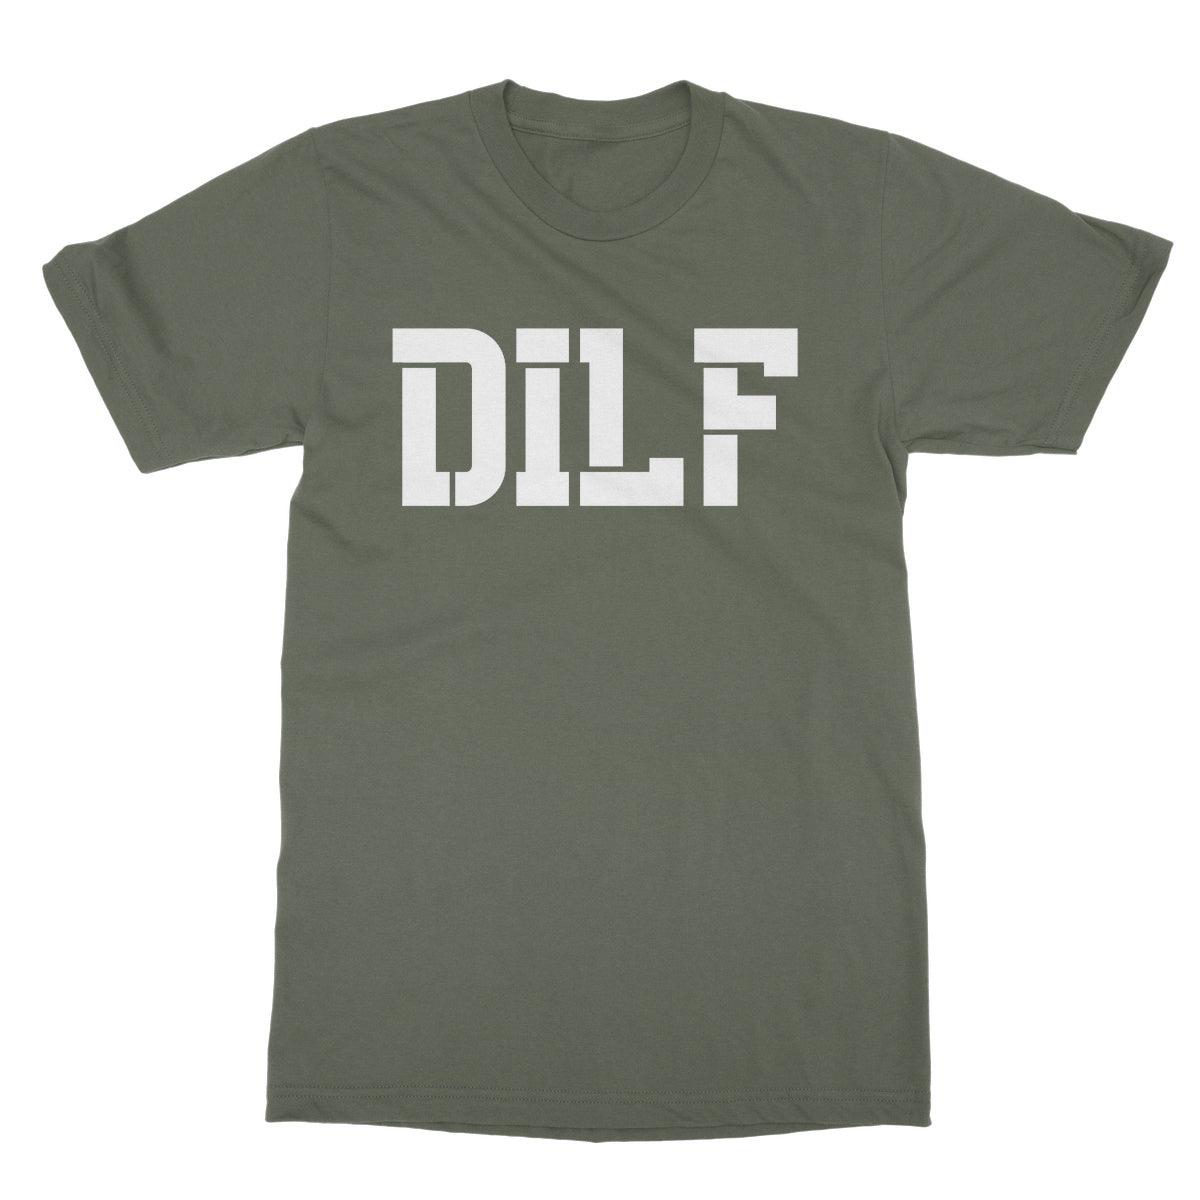 dilf t shirt green